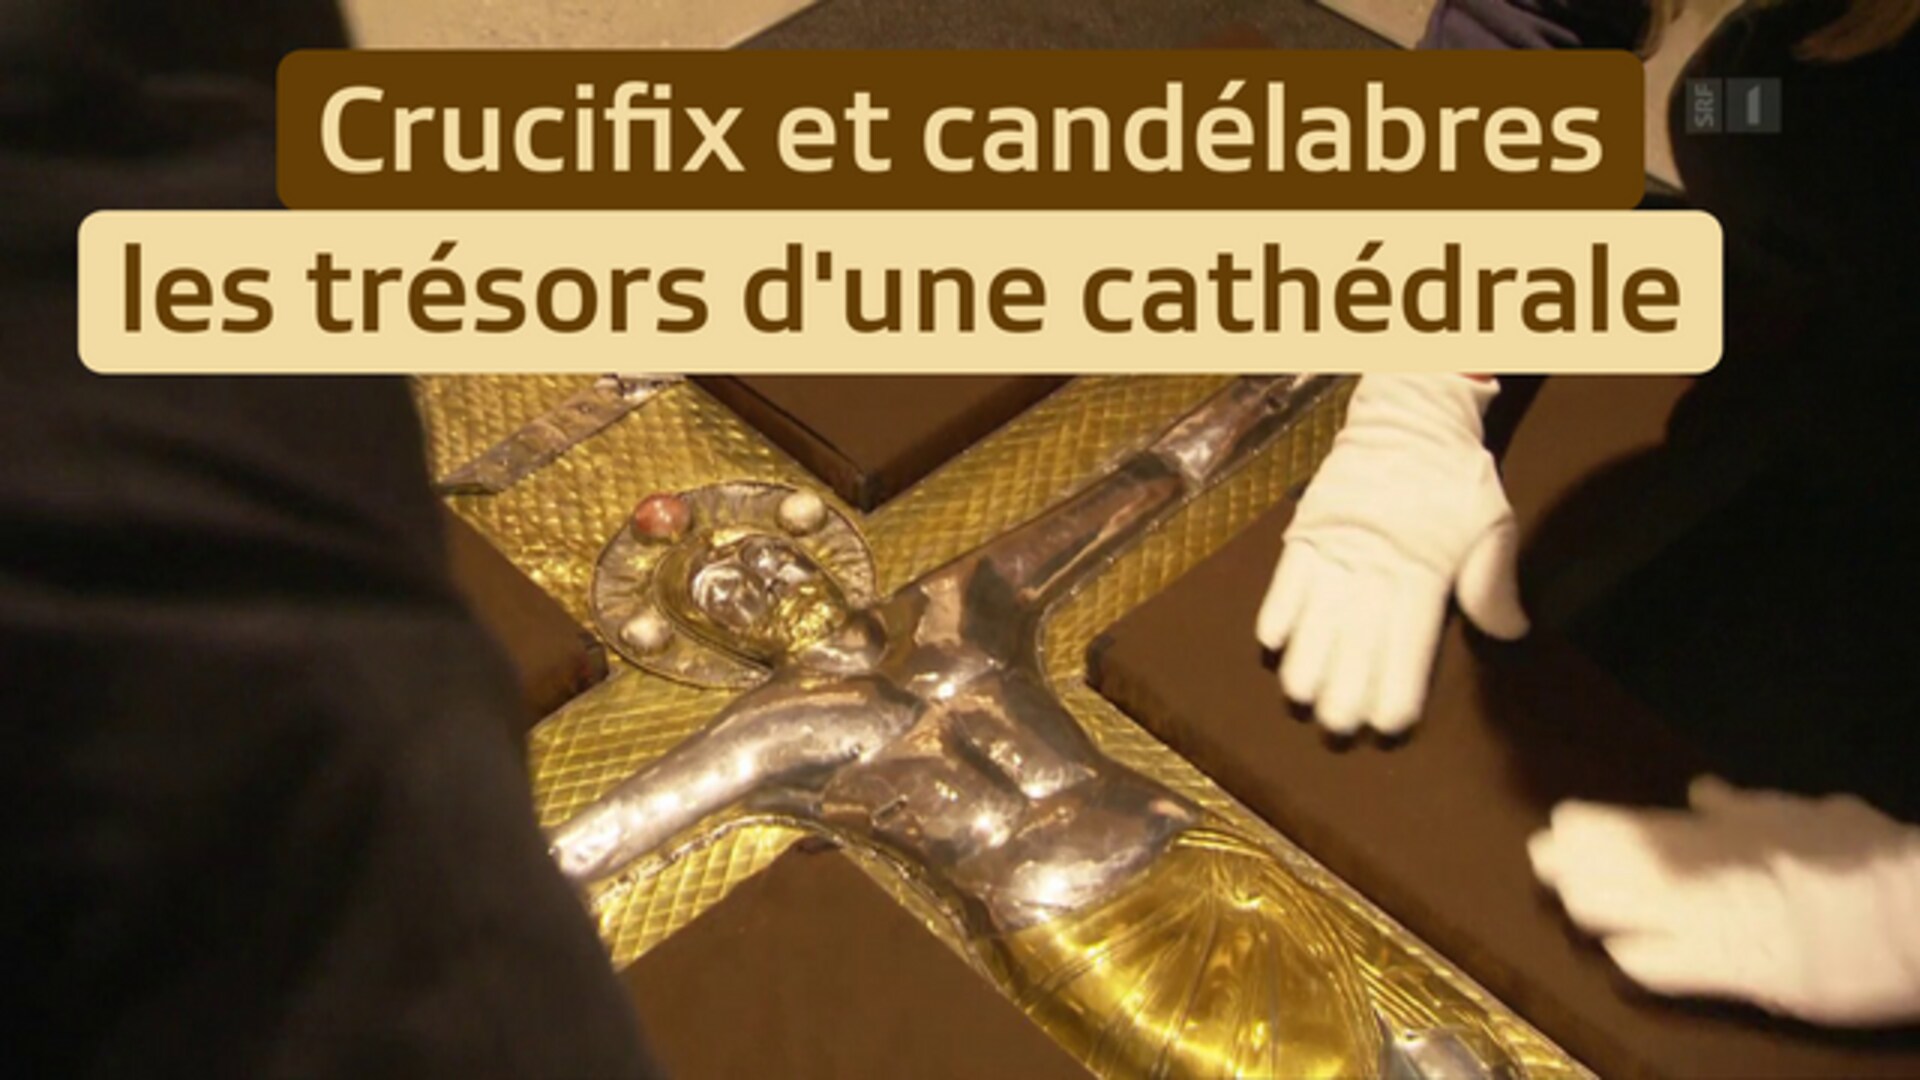 Crucifix et candélabres - les trésors d'une cathédrale